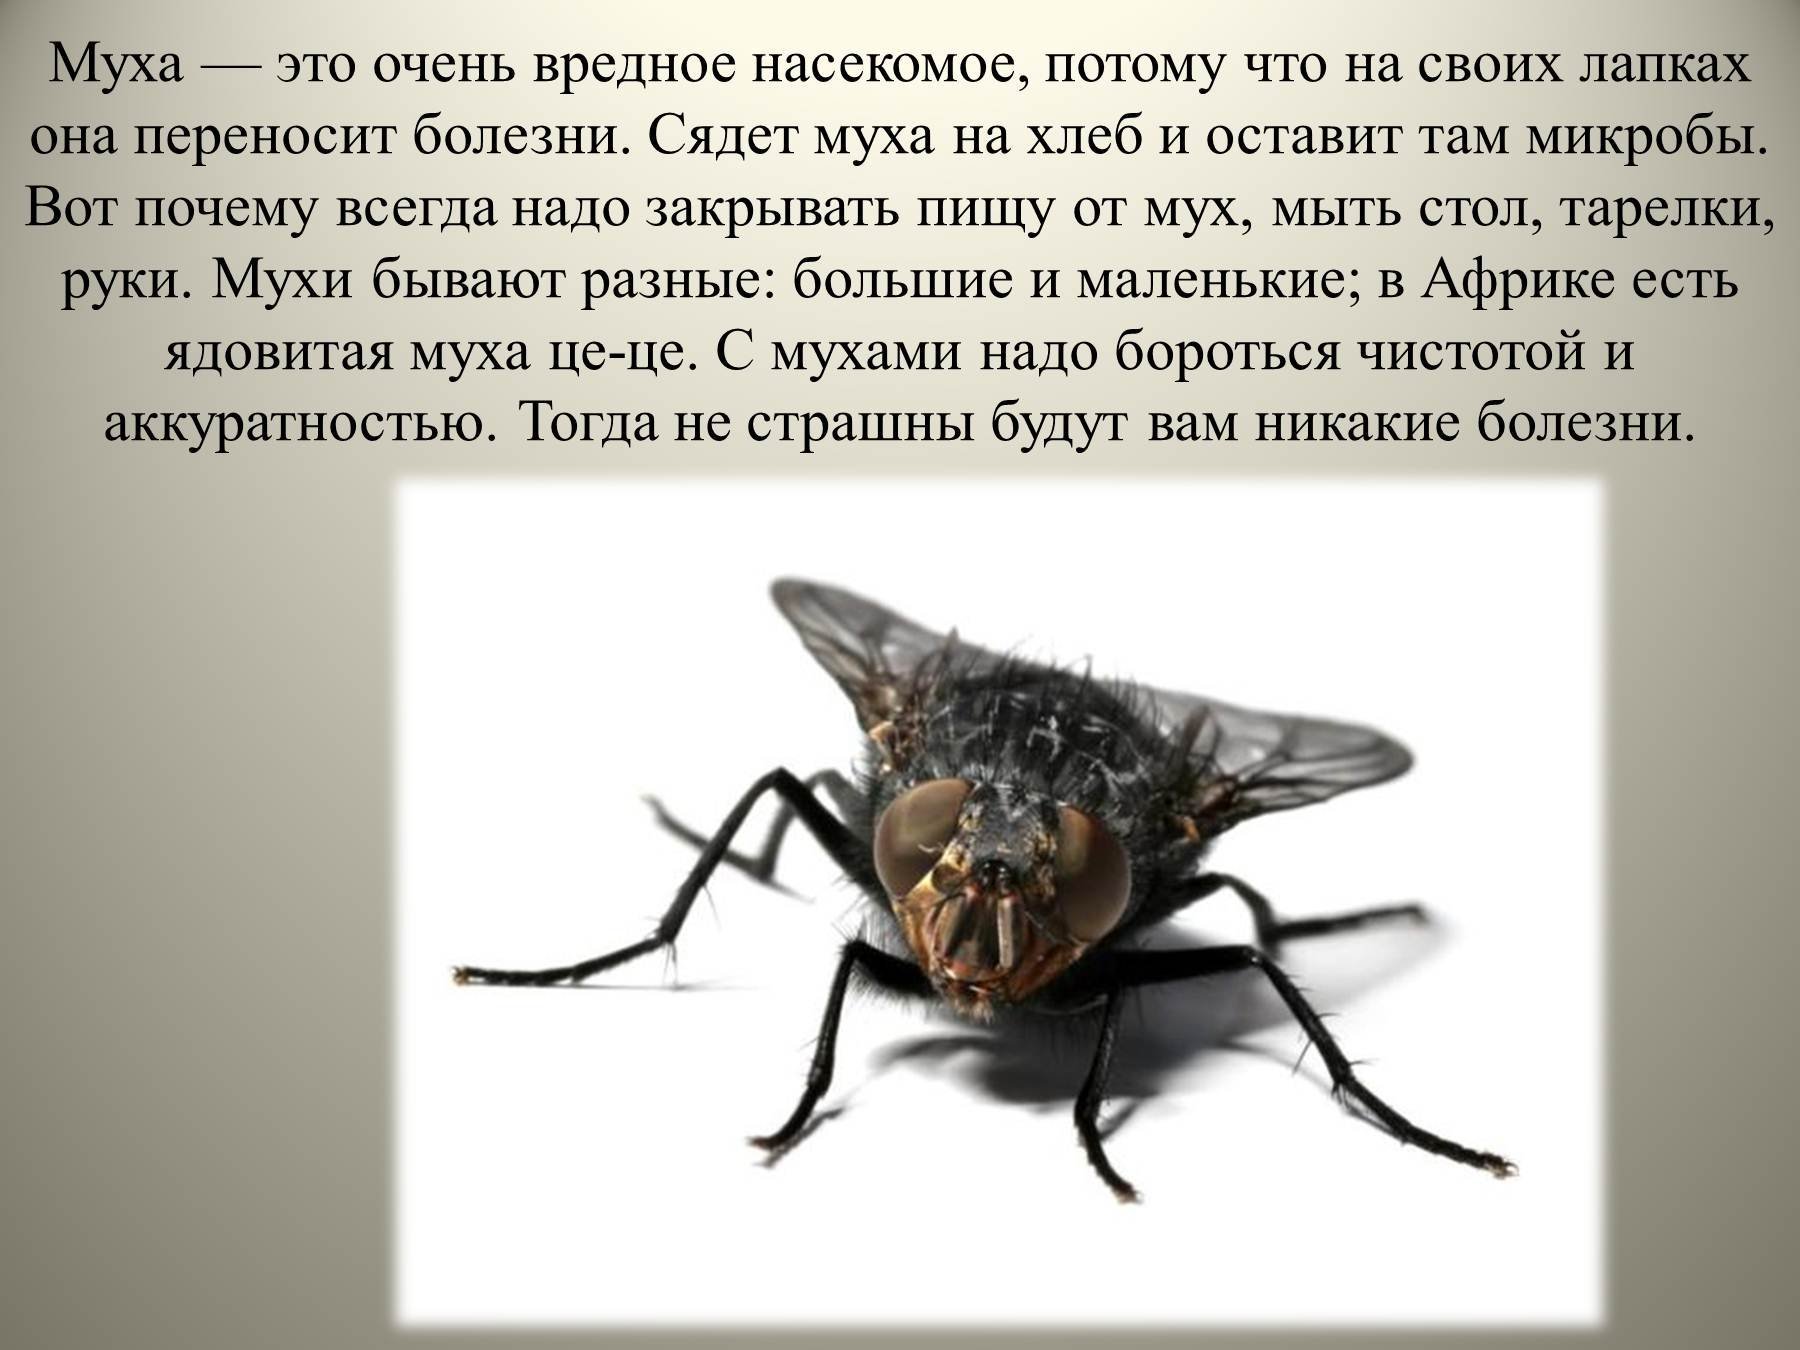 Детям про муху. Доклад про мух. Вредные насекомые. Сообщение про муху. Интересные факты о мухах.